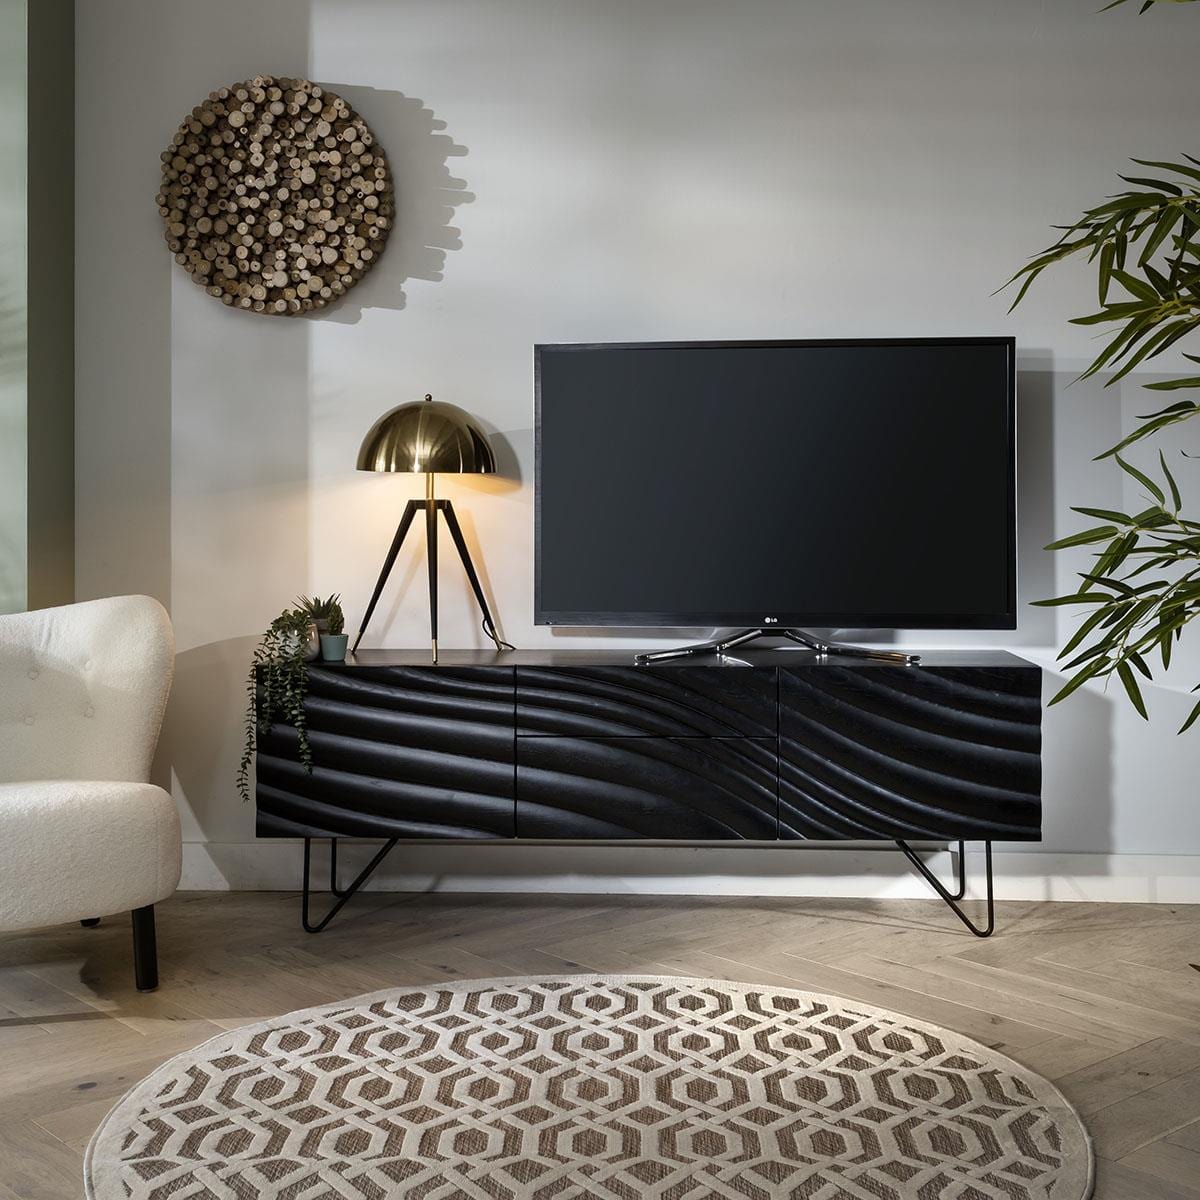 Quatropi Unique Black Sideboard Nordic-Inspired Modern Cabinet - 180cm Ash Wood